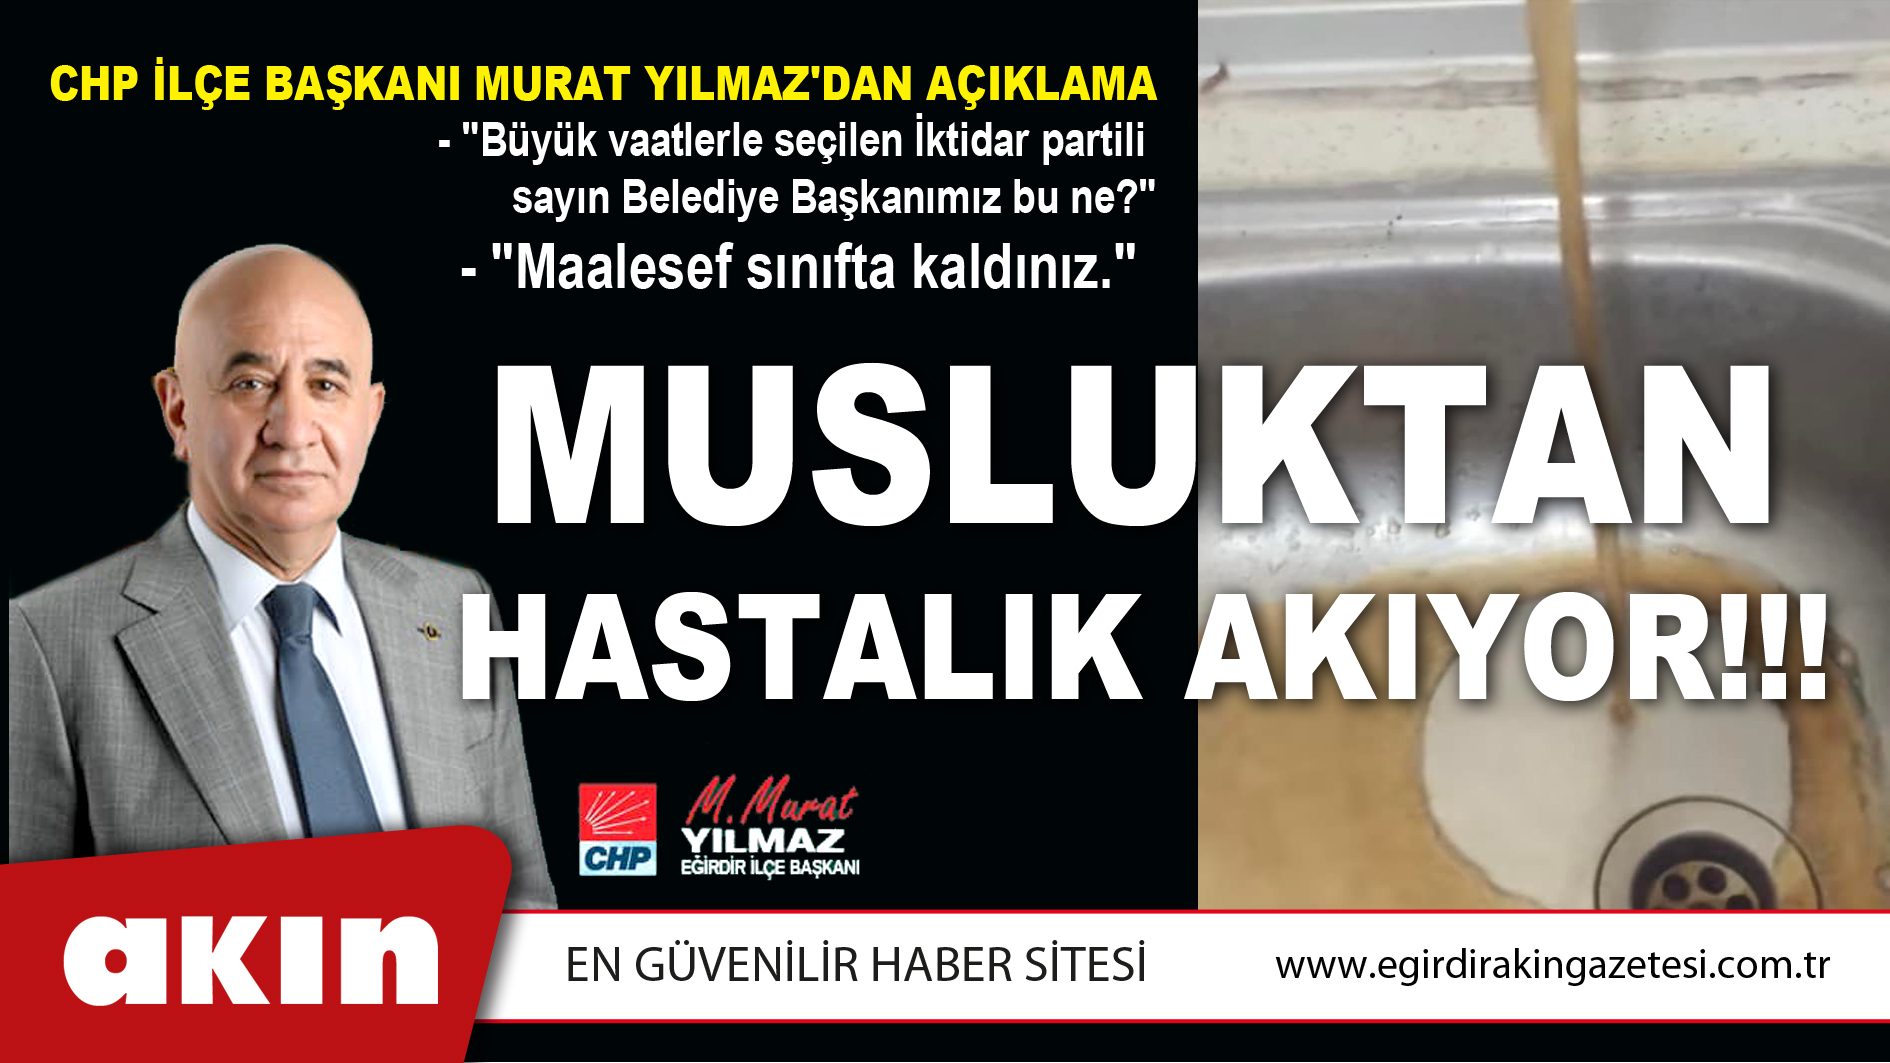 eğirdir haber,akın gazetesi,egirdir haberler,son dakika,CHP İlçe Başkanı Murat Yılmaz'dan Açıklama